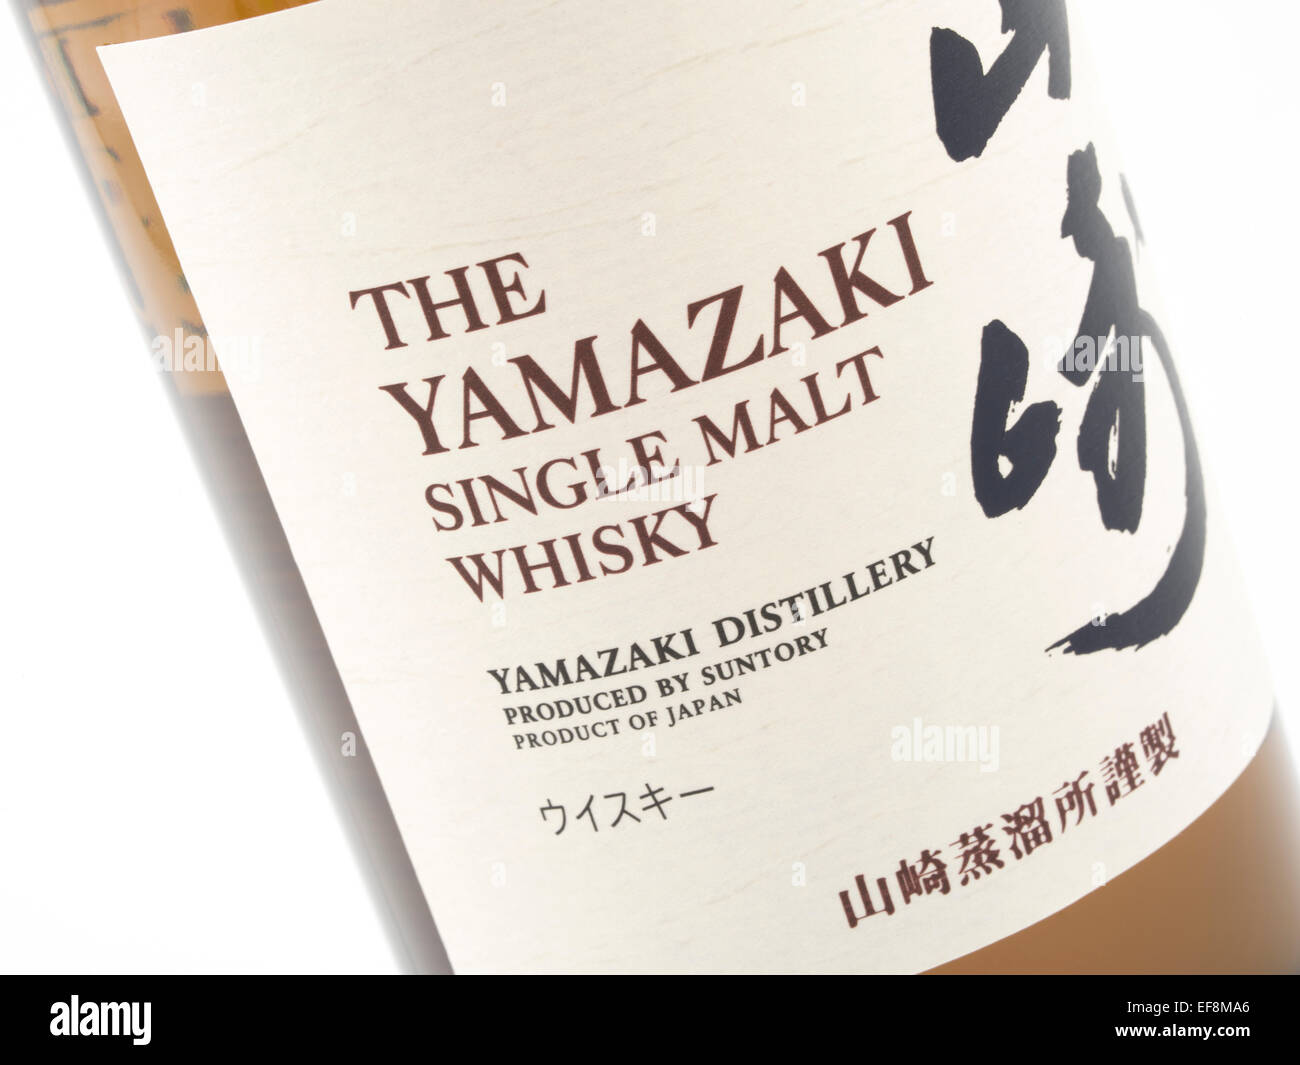 The Yamazaki Single Malt Whisky produced by Suntory, product of Japan. Japanese Whisky Stock Photo